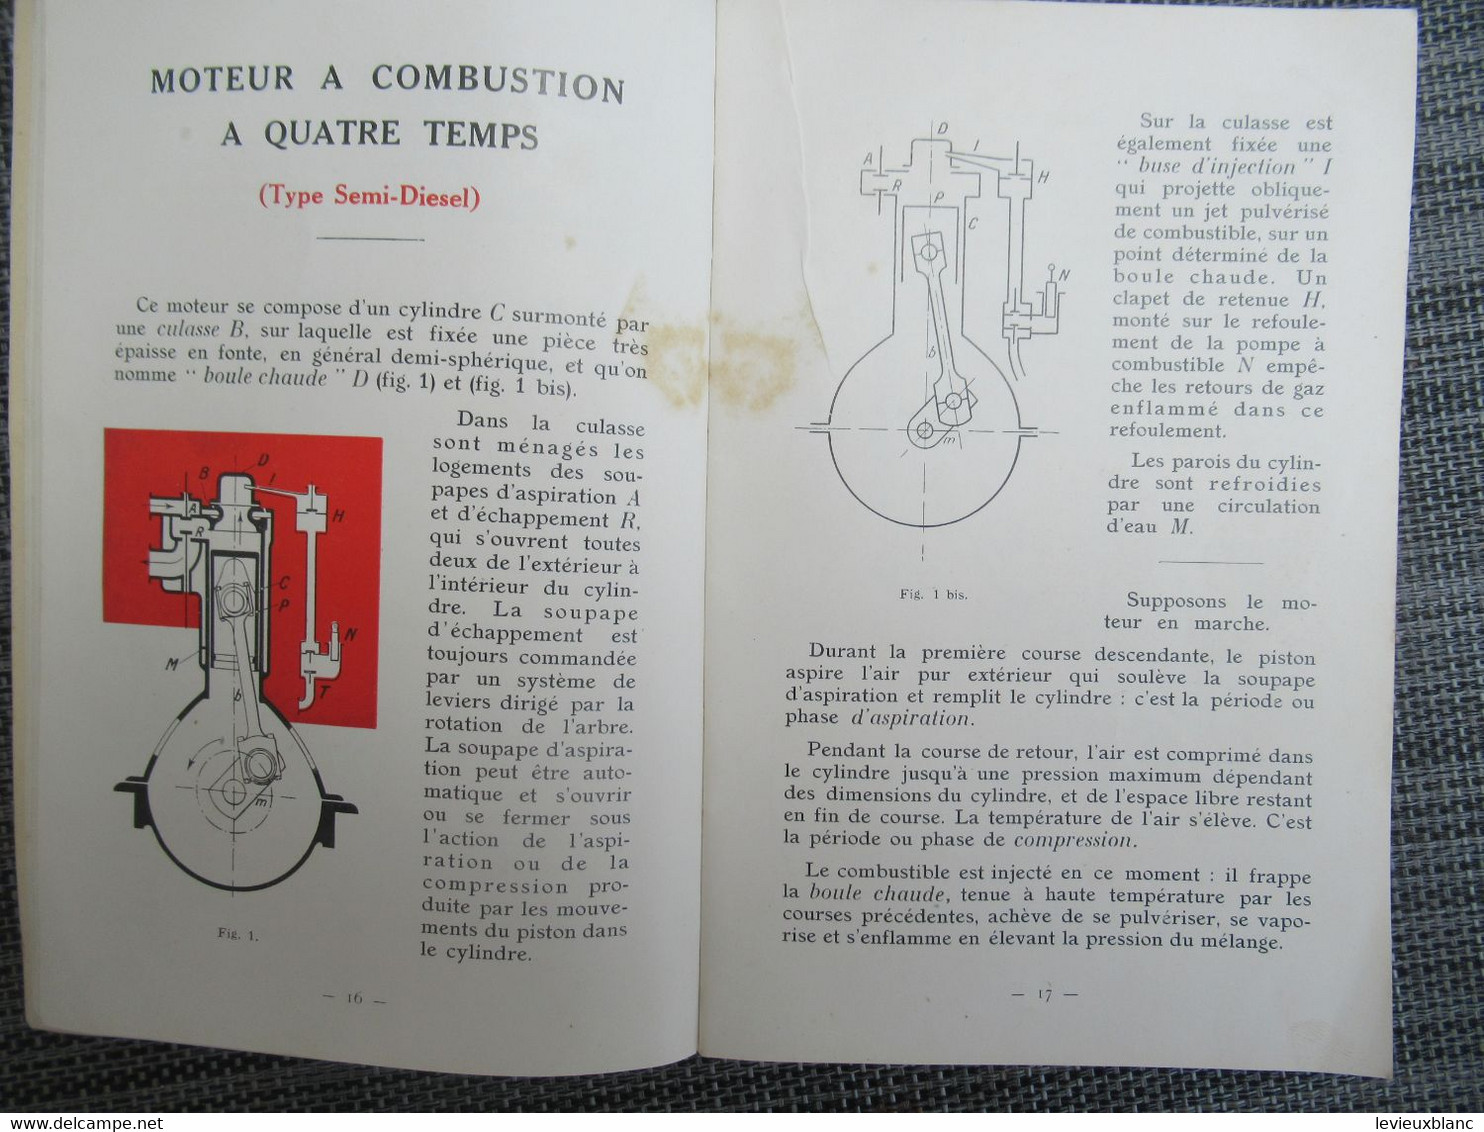 Guide De Graissage  MOTEURS SEMI-DIESEL MARINS/Vacuum Oil Company/ Paris/GARGOYLE/Vers 1925-1930       MAR108 - Bateau